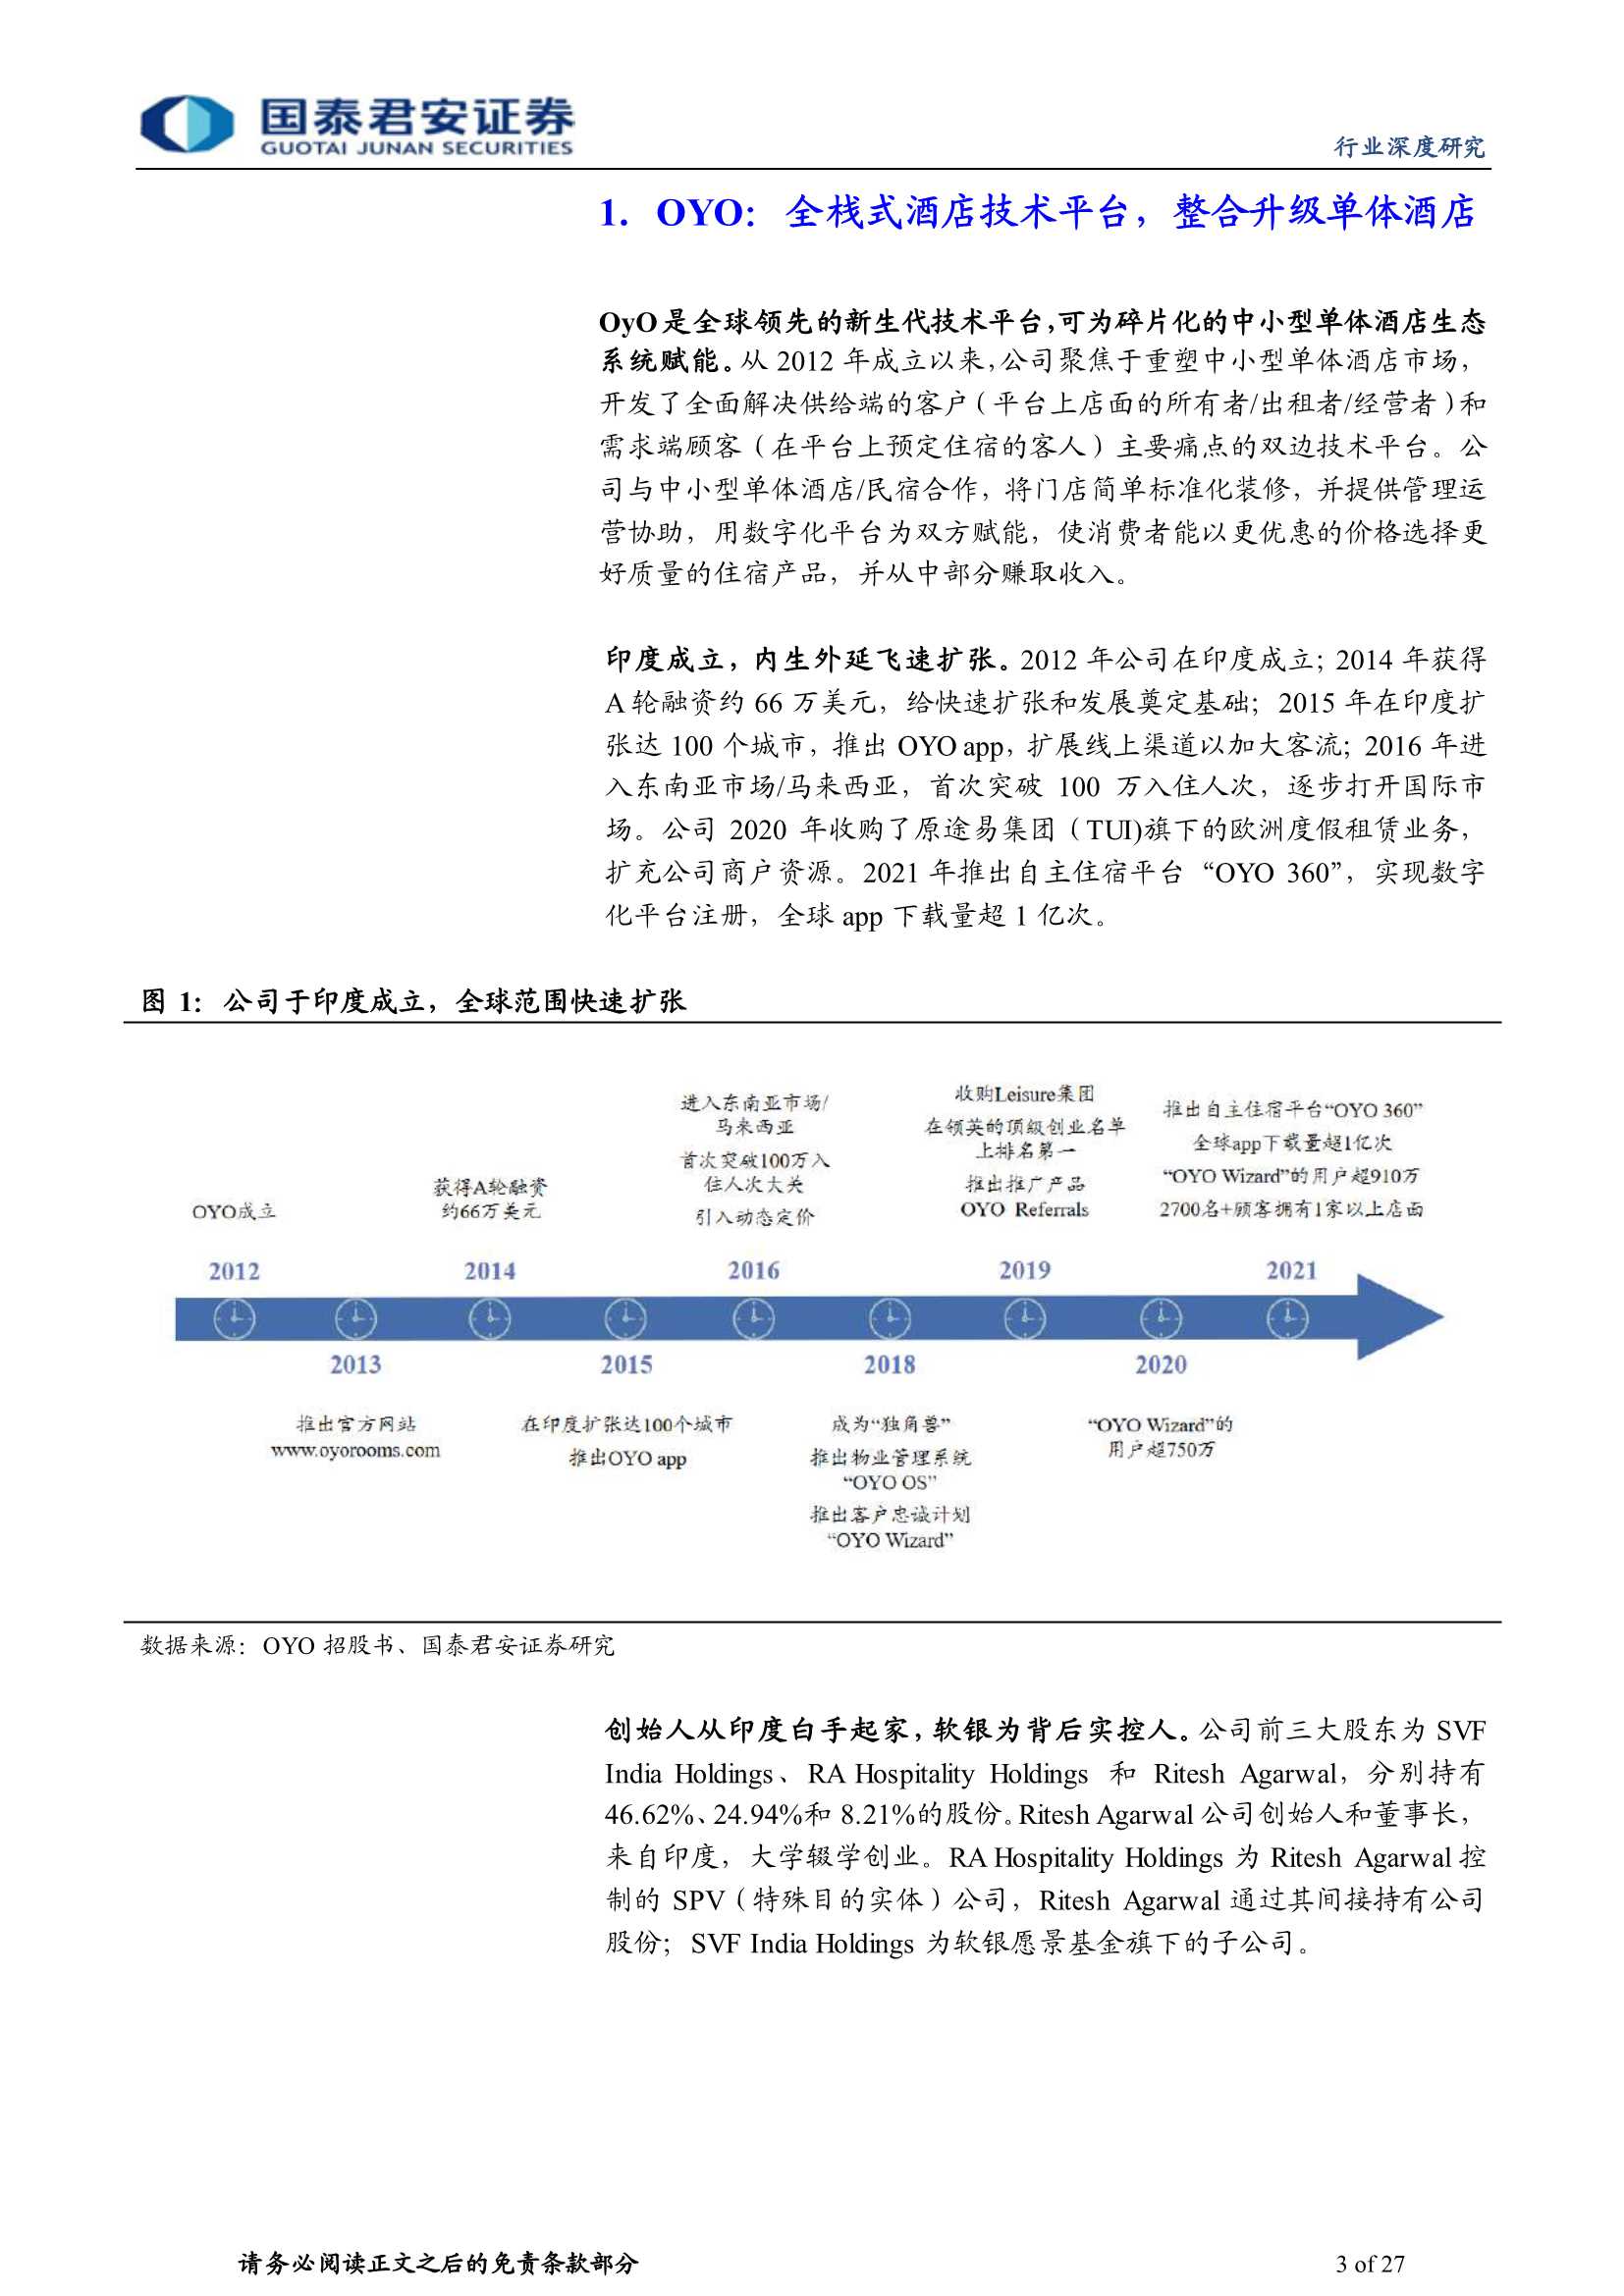 国泰君安-旅游行业：OyO商业模式详解-20211209-27页